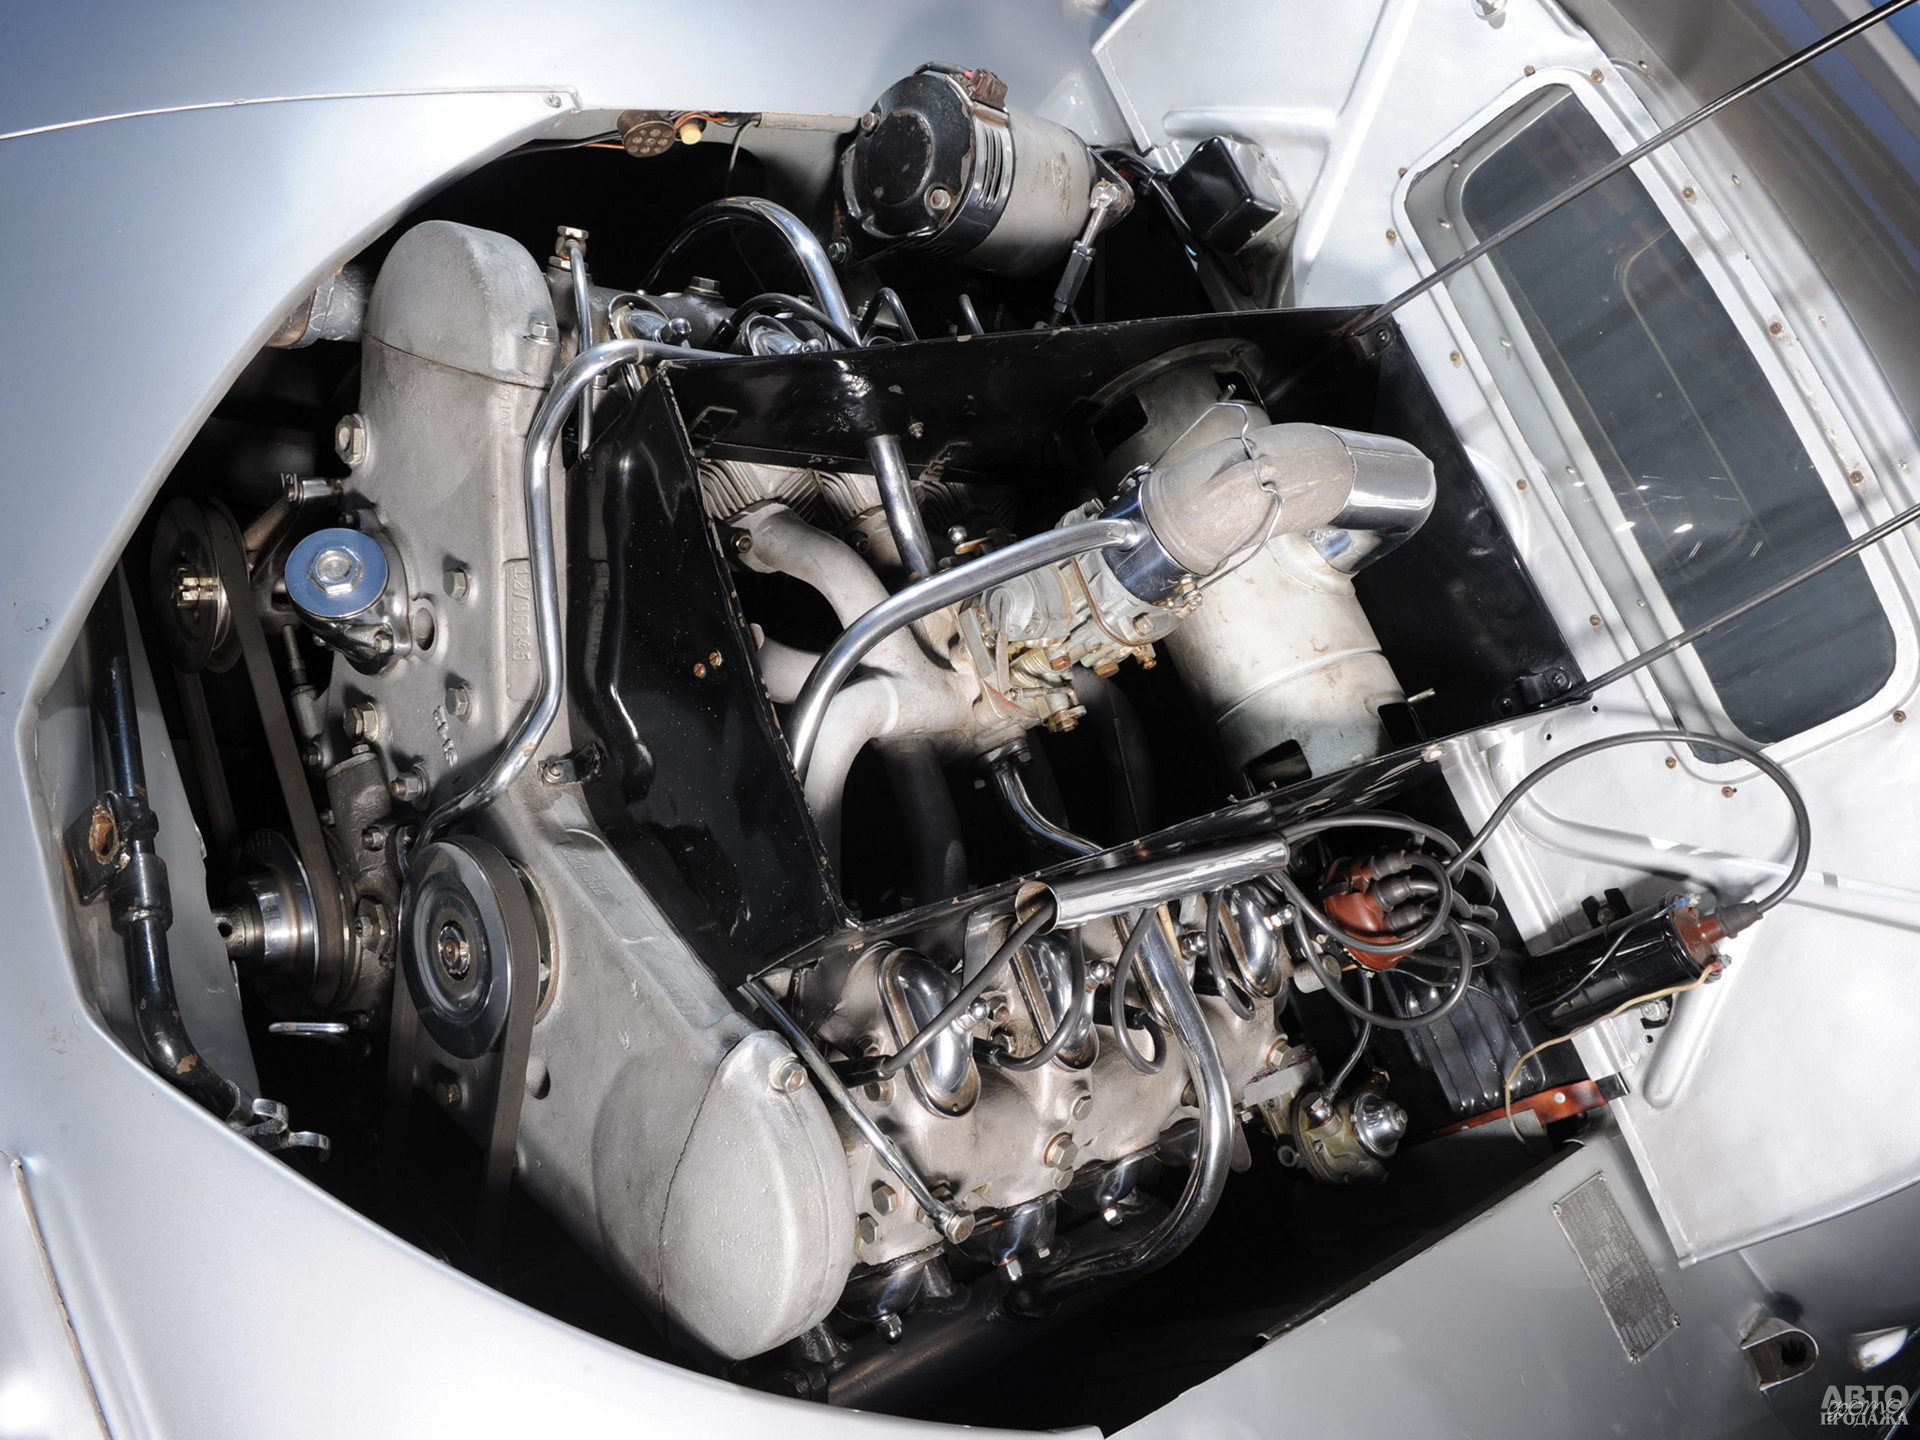 Двигатели V8 Tatrа были оснащены воздушным охлаждением